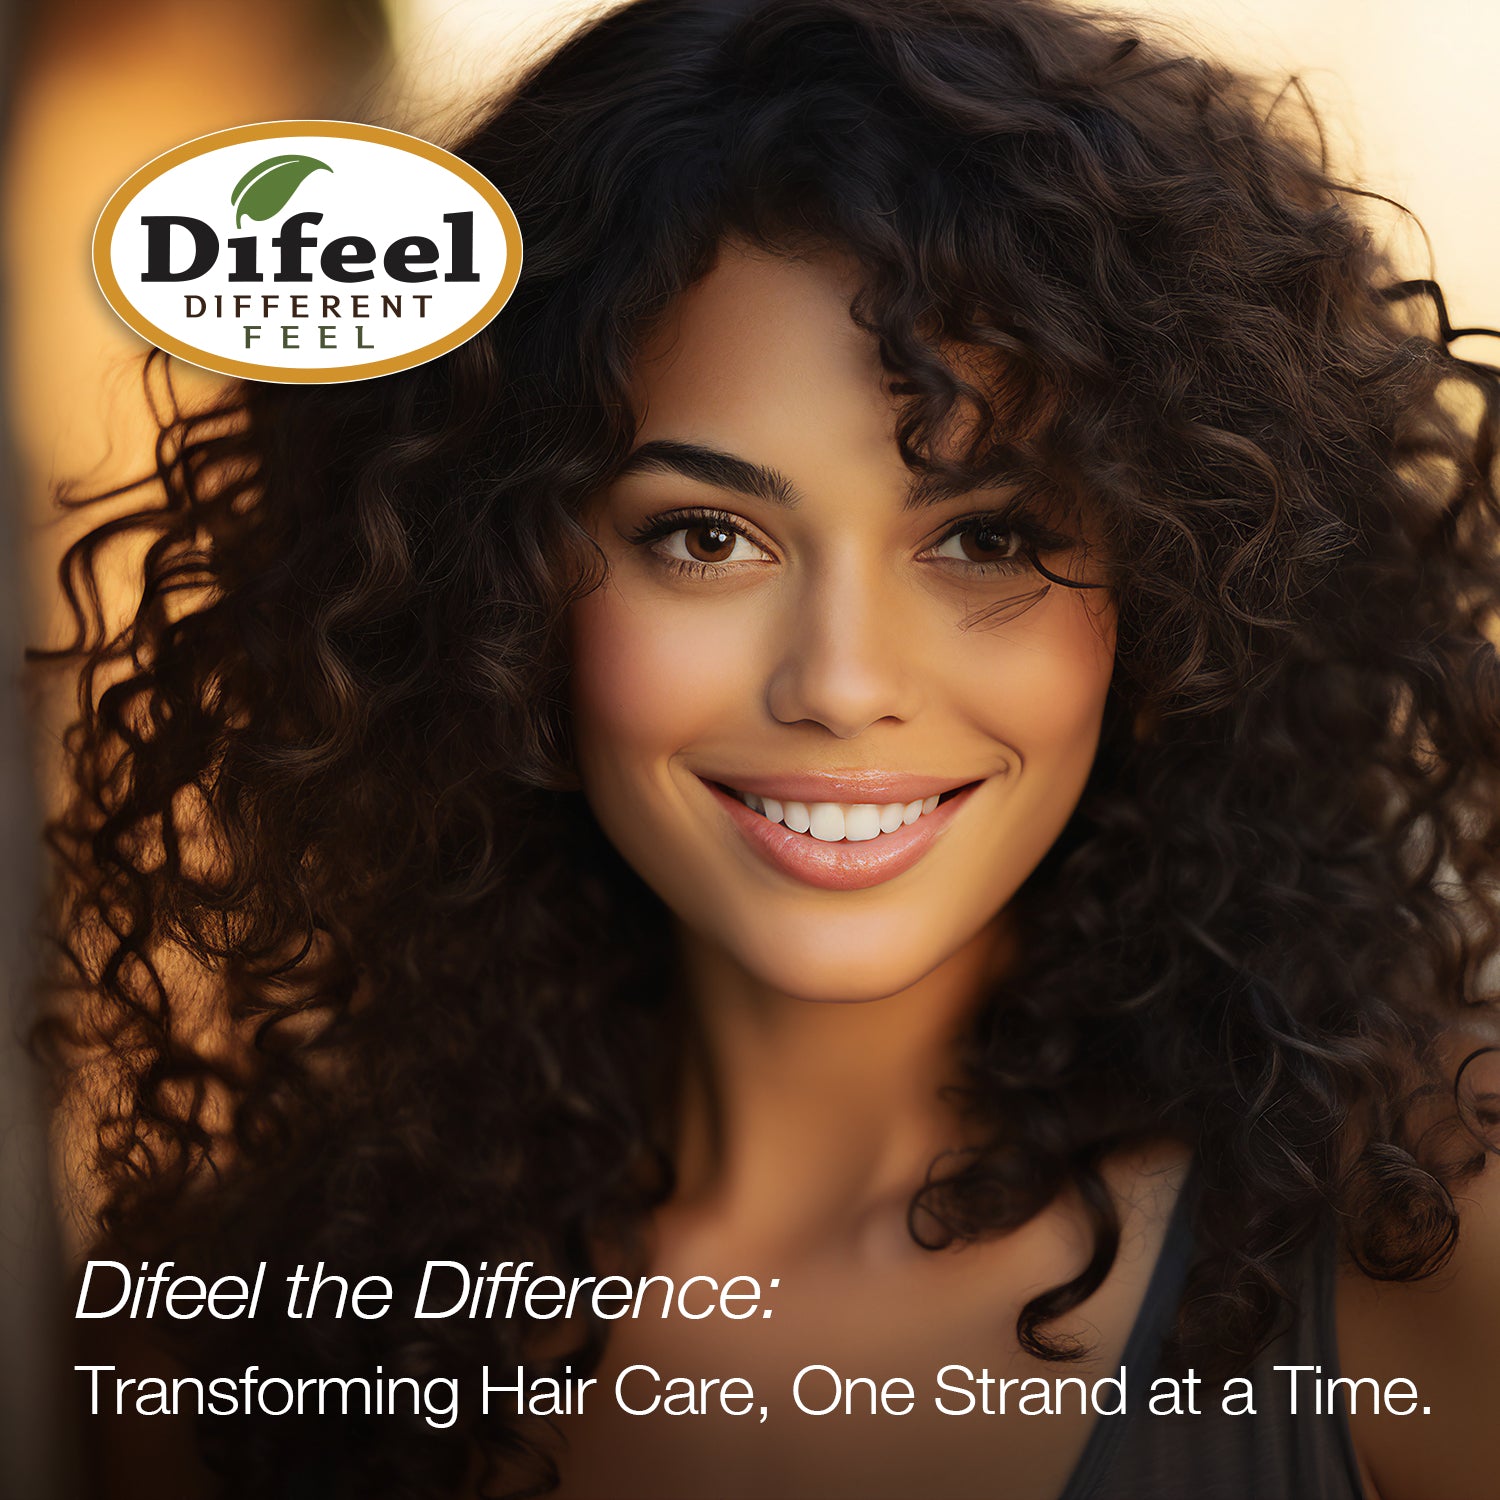 Difeel Biotin Premium Hair Oil 2.5 oz. (PACK OF 2)